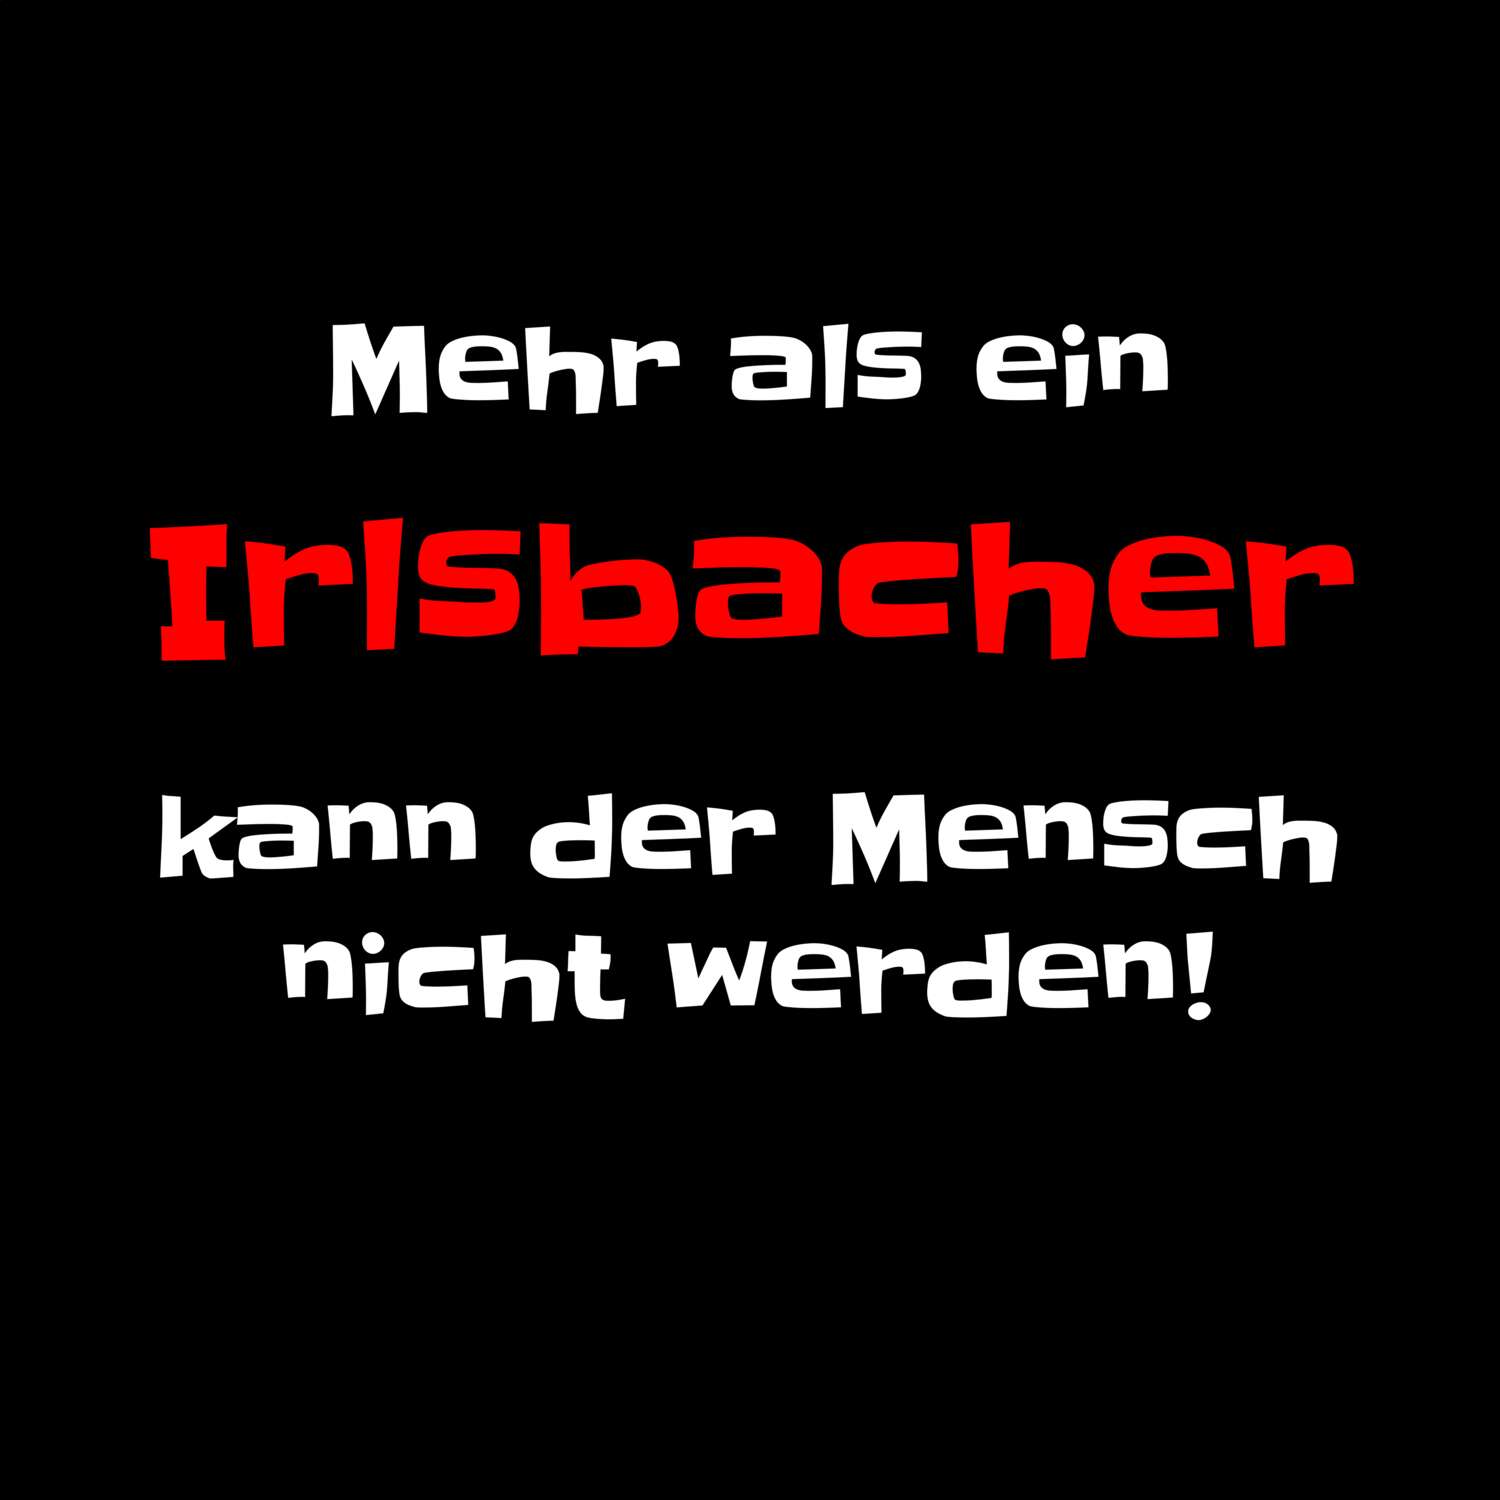 Irlsbach T-Shirt »Mehr als ein«